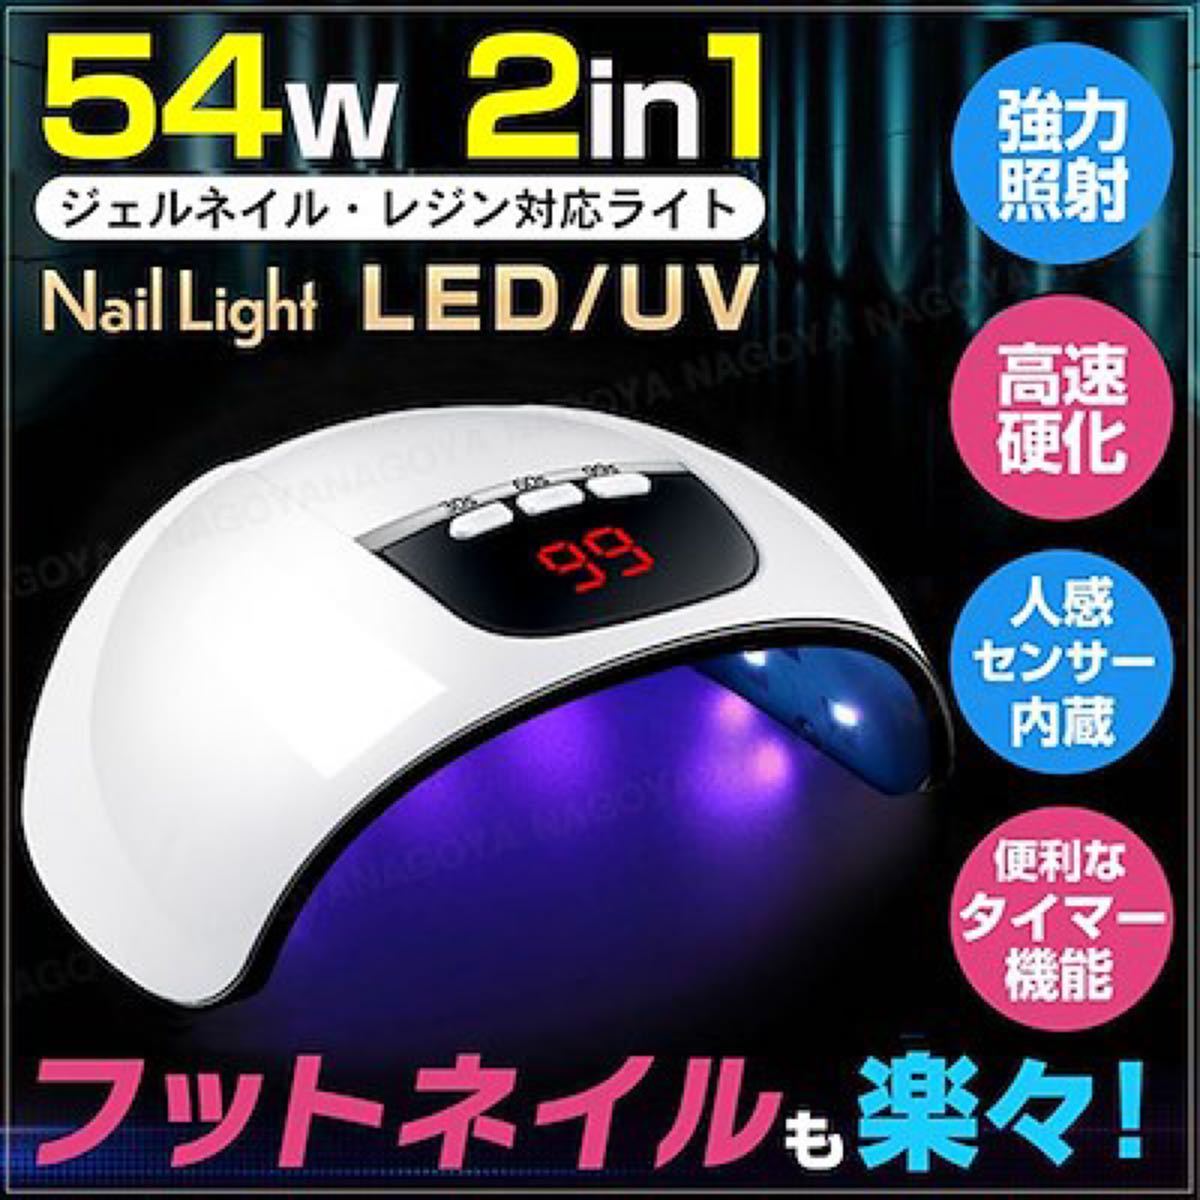 売れ筋 ネイルライト ジェルネイルライト 54W LED UV レジン 高速硬化 f